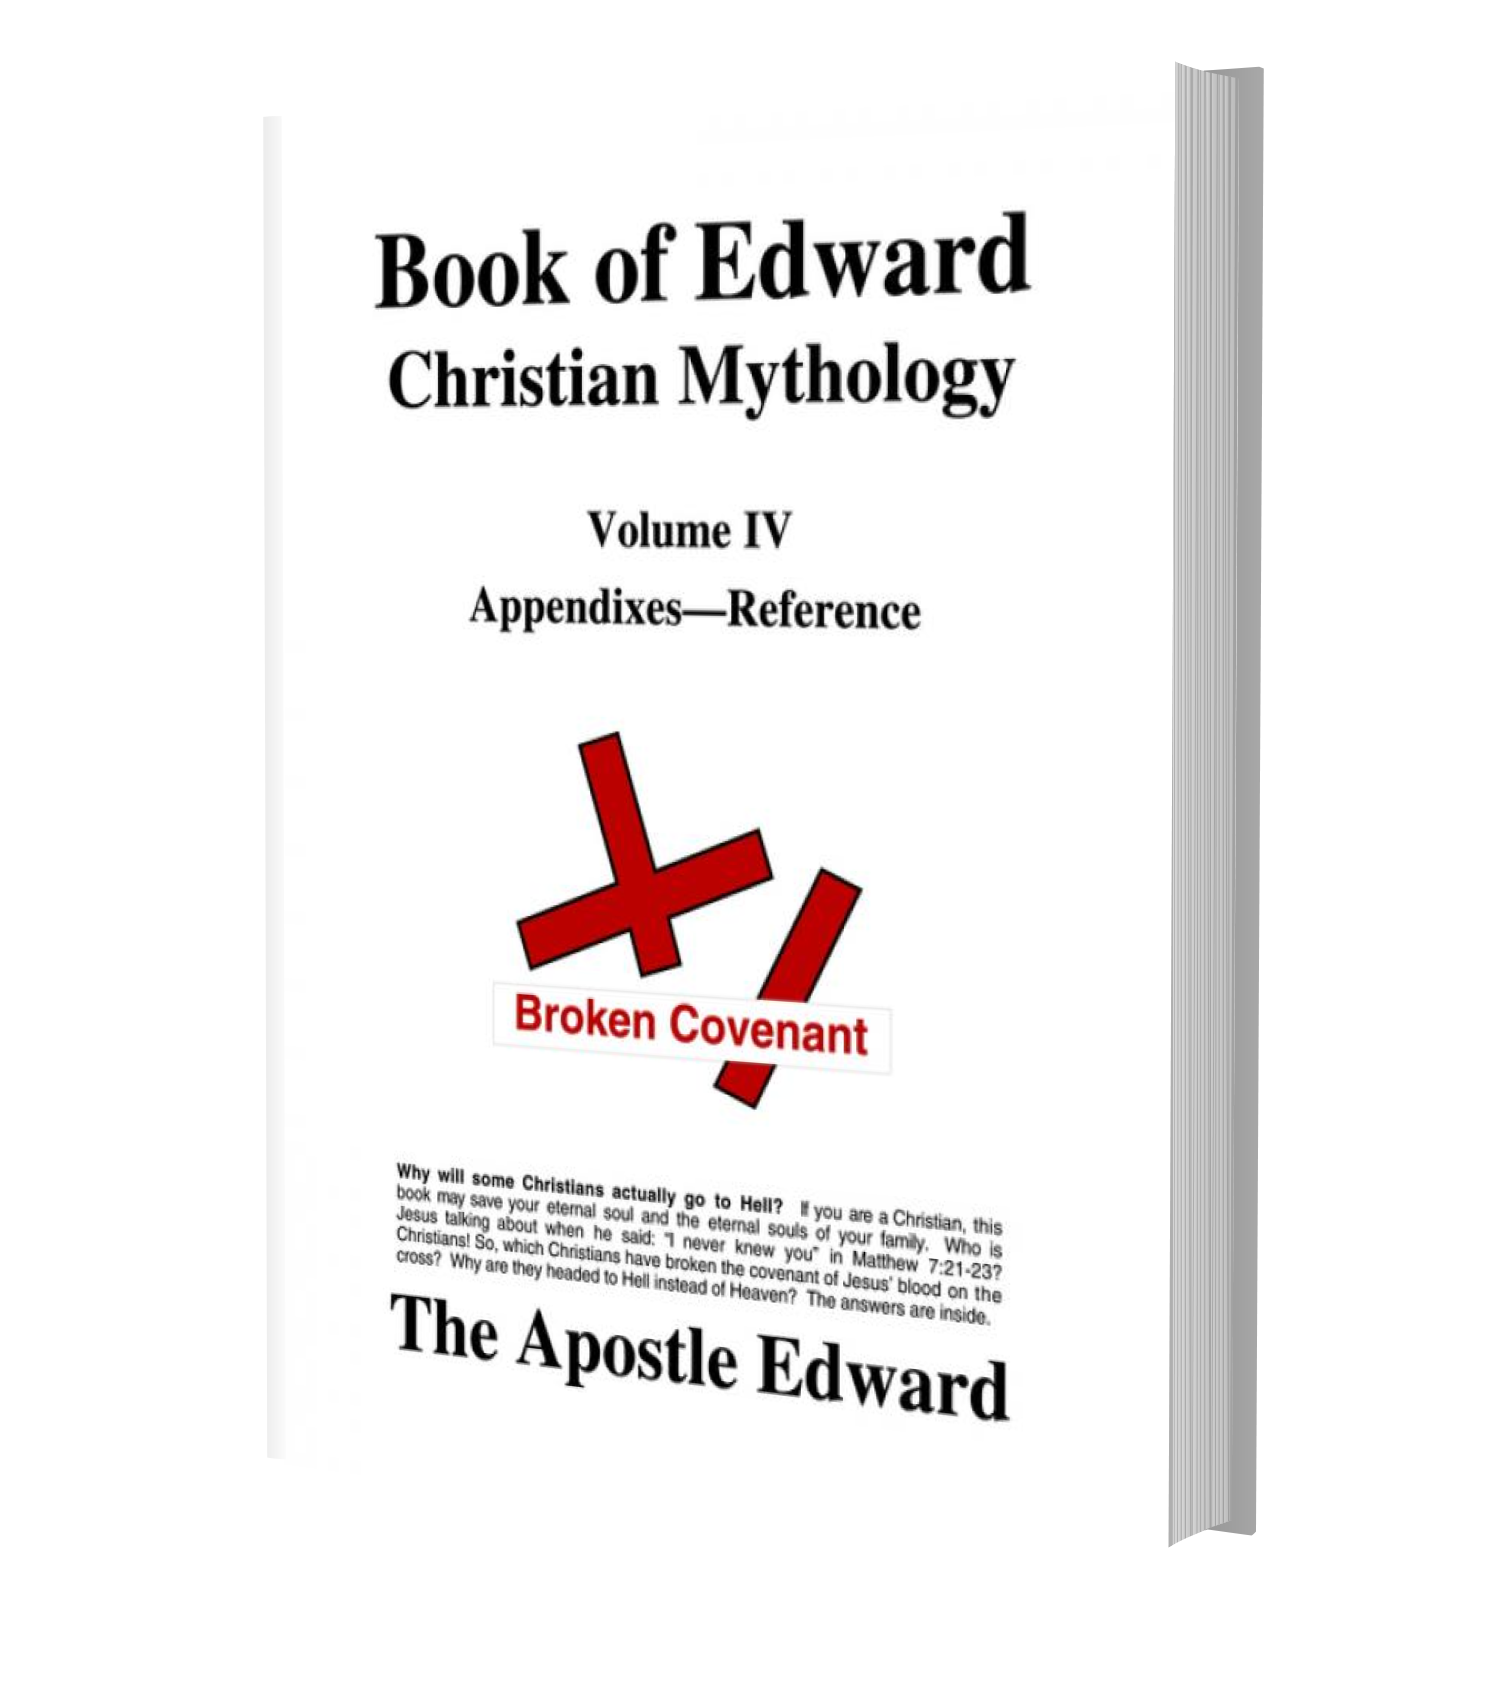 Image of Apostle Edward's Book of Edward Volume IV